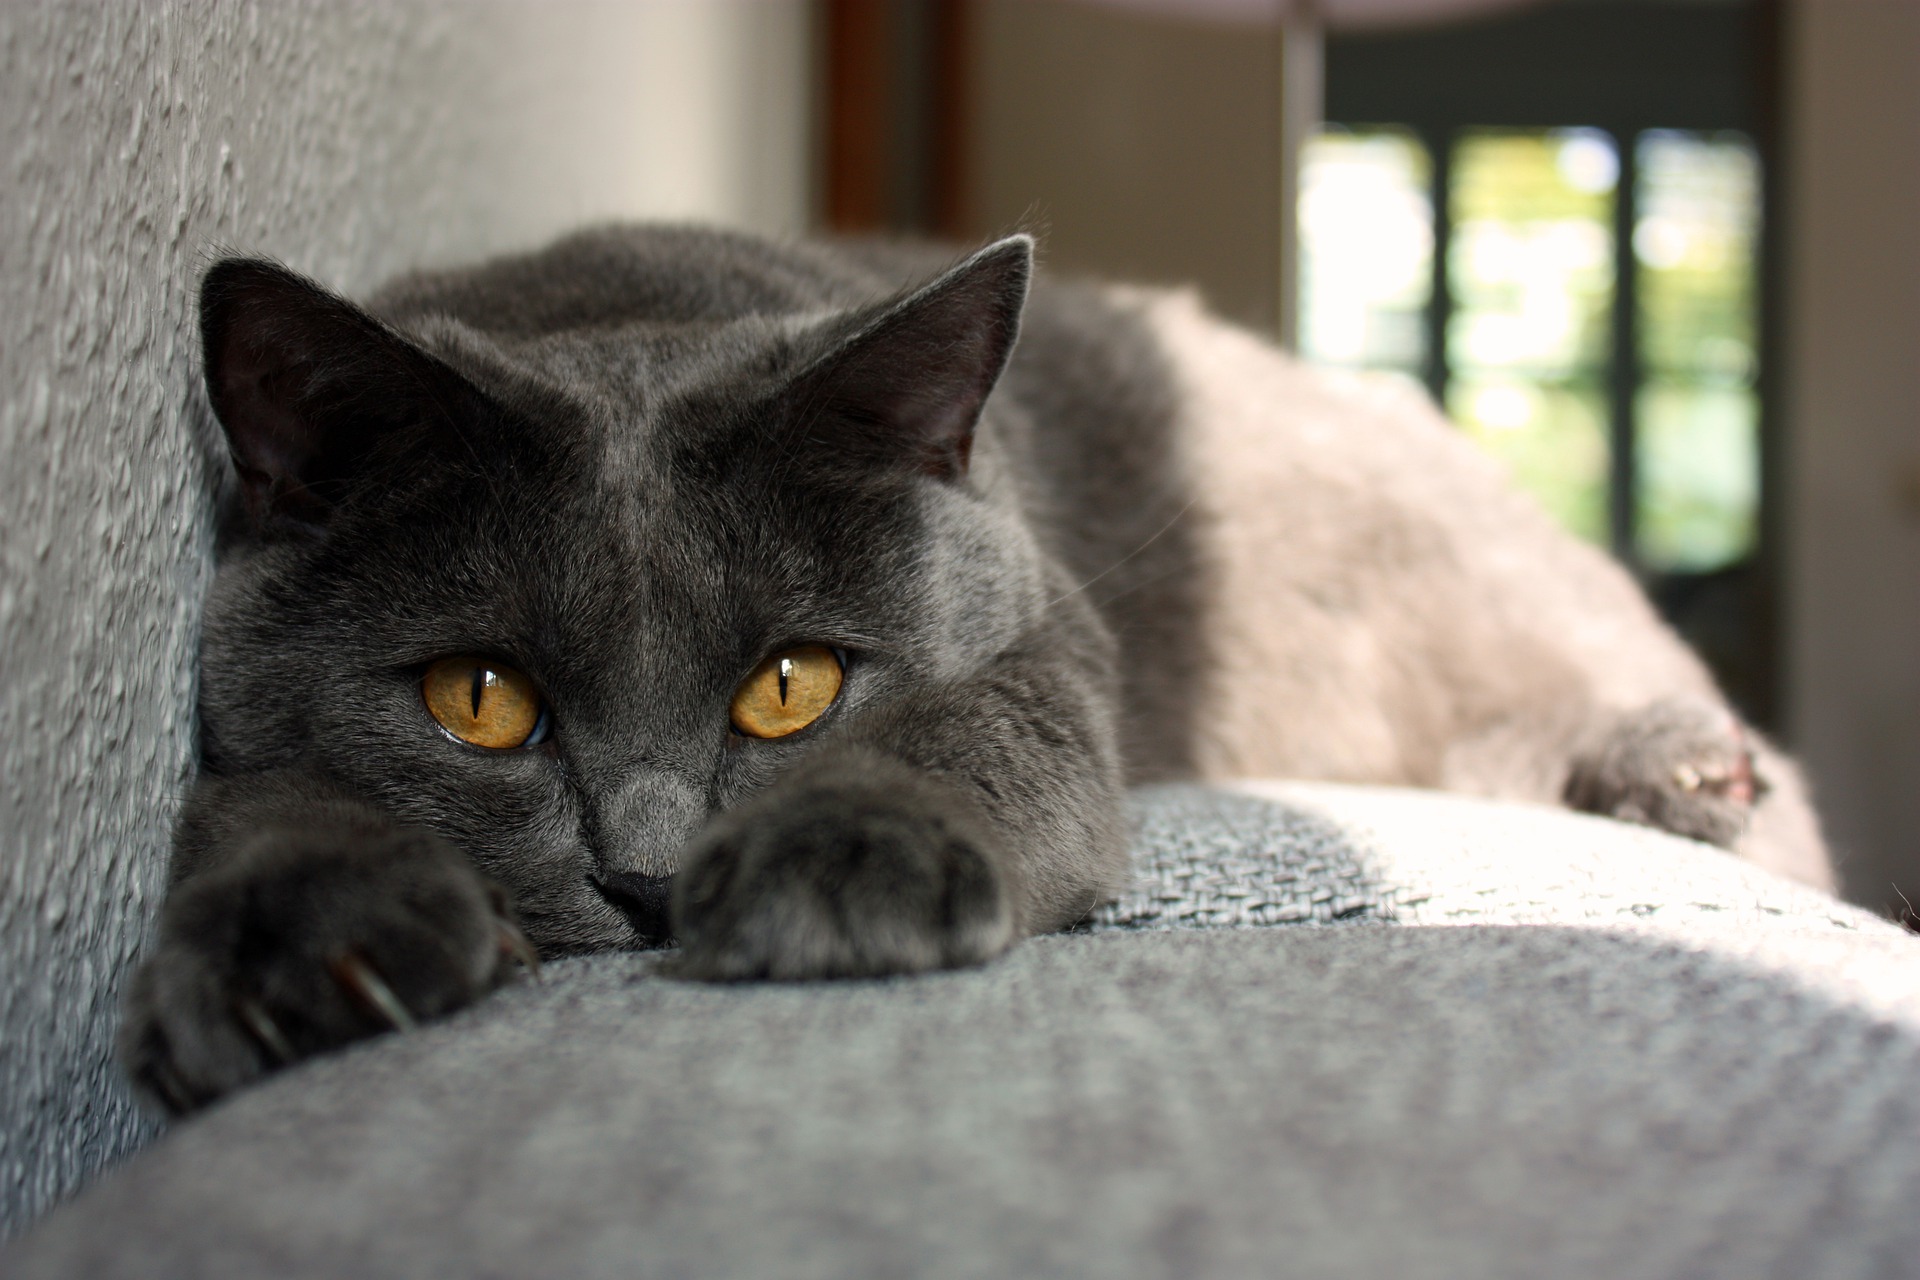 Kartouzské kočky musí mít zlaté oči, odstíny od žluté po měď jsou přijatelné. 